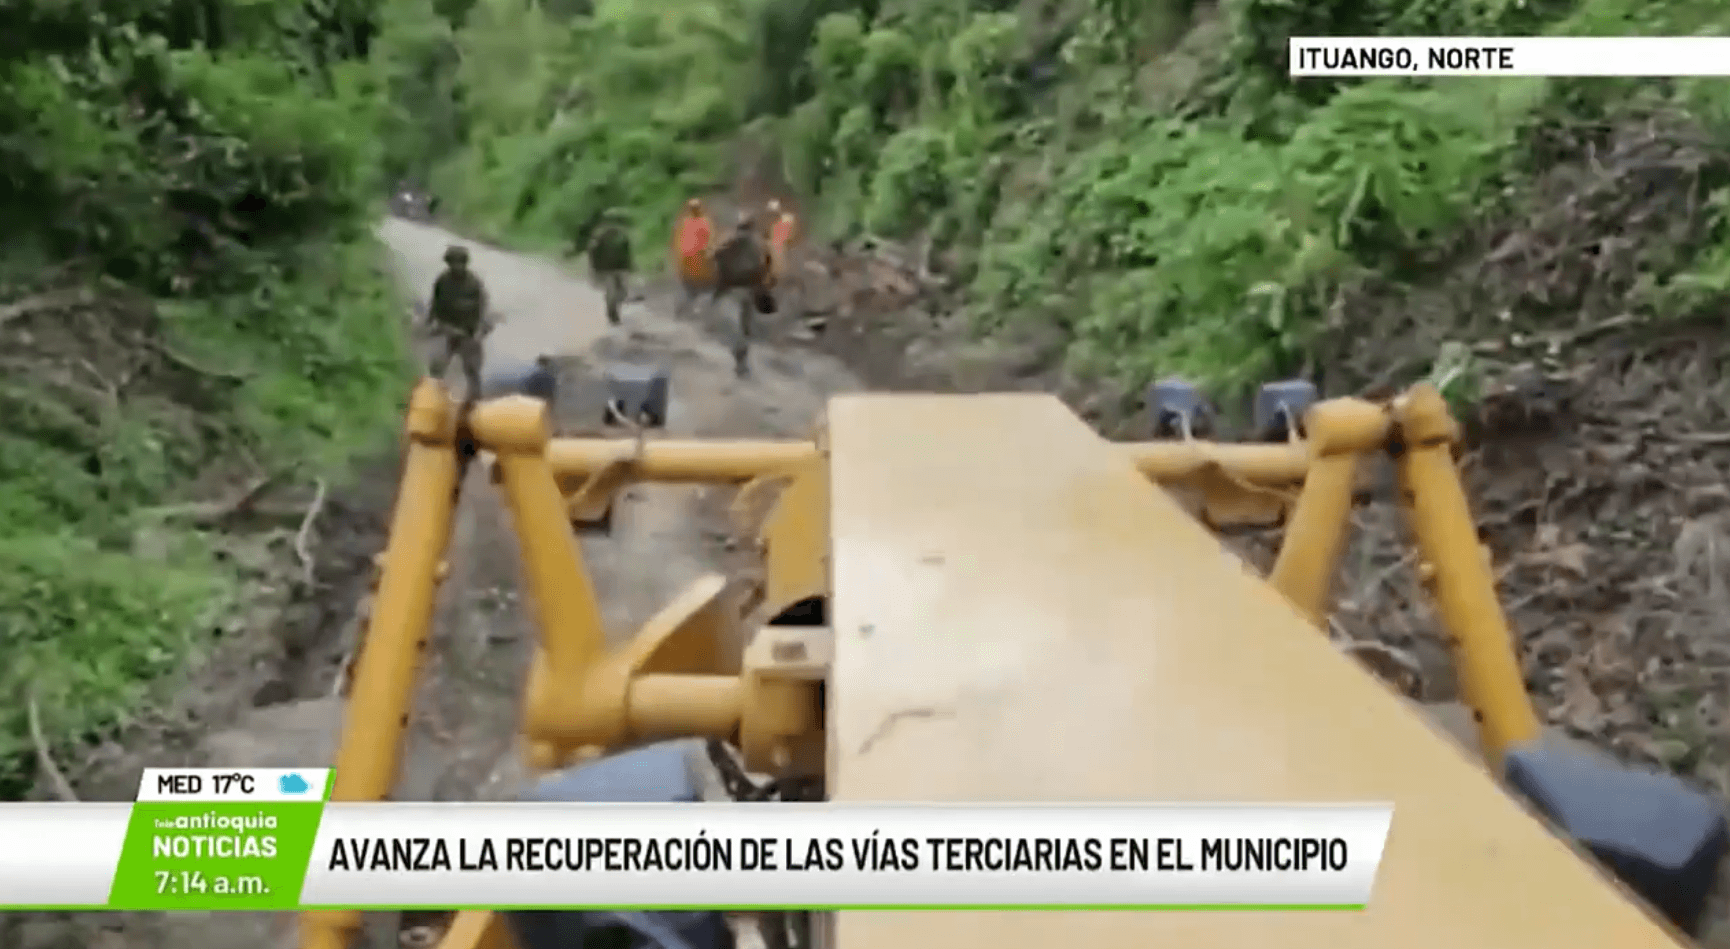 Avanza la recuperación de las vías terciarias en Ituango